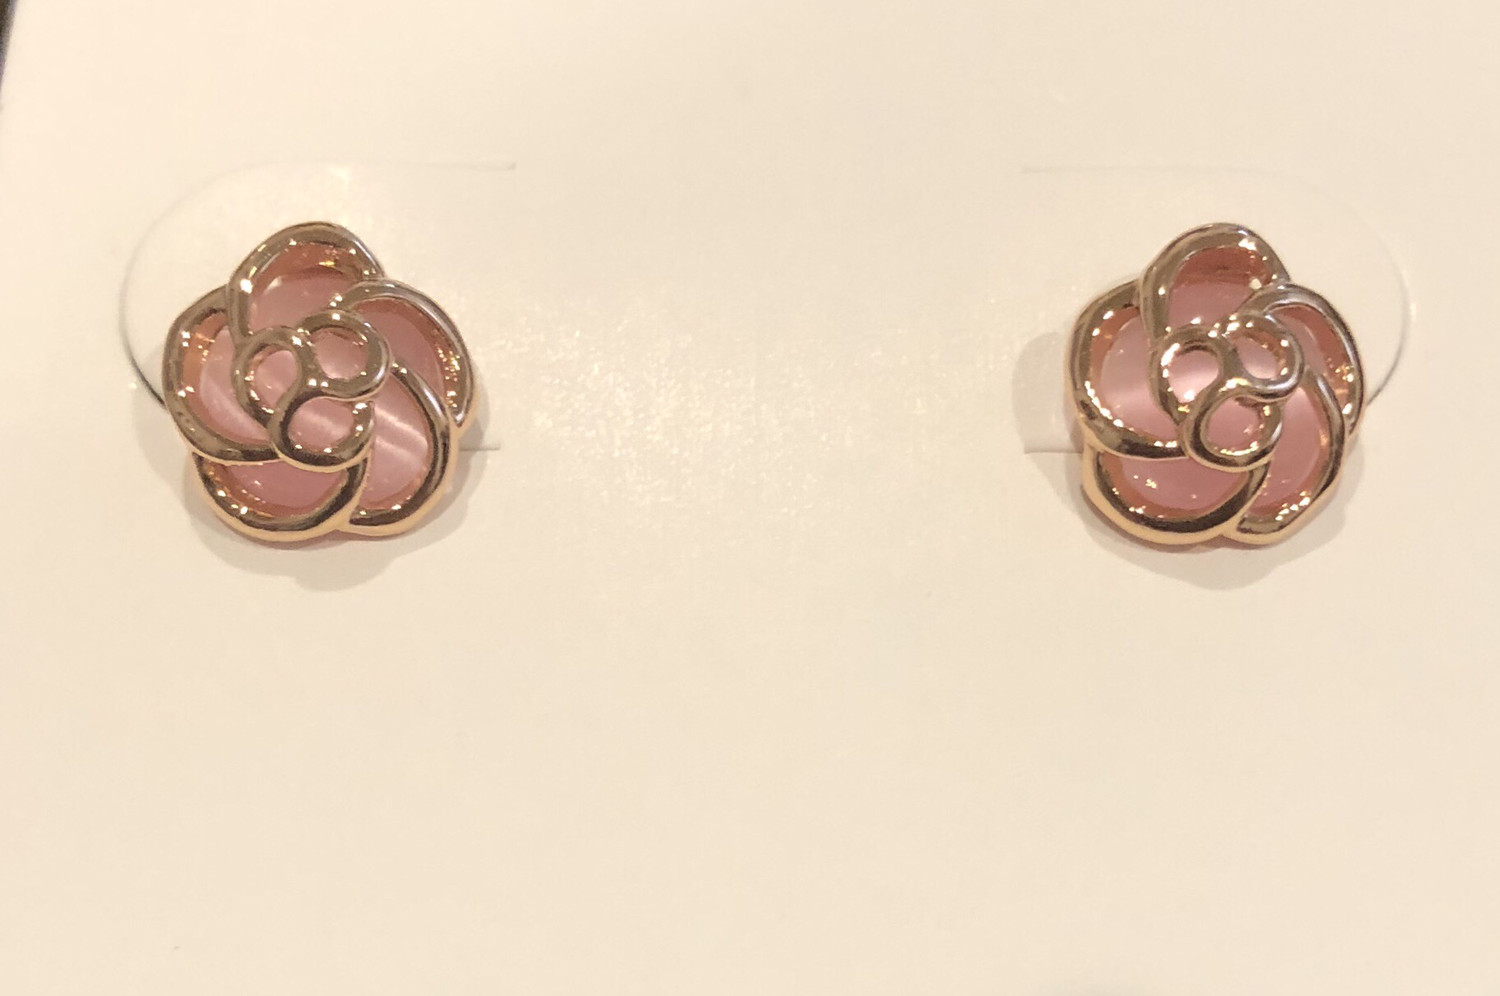 Pink Tea Rose Earrings